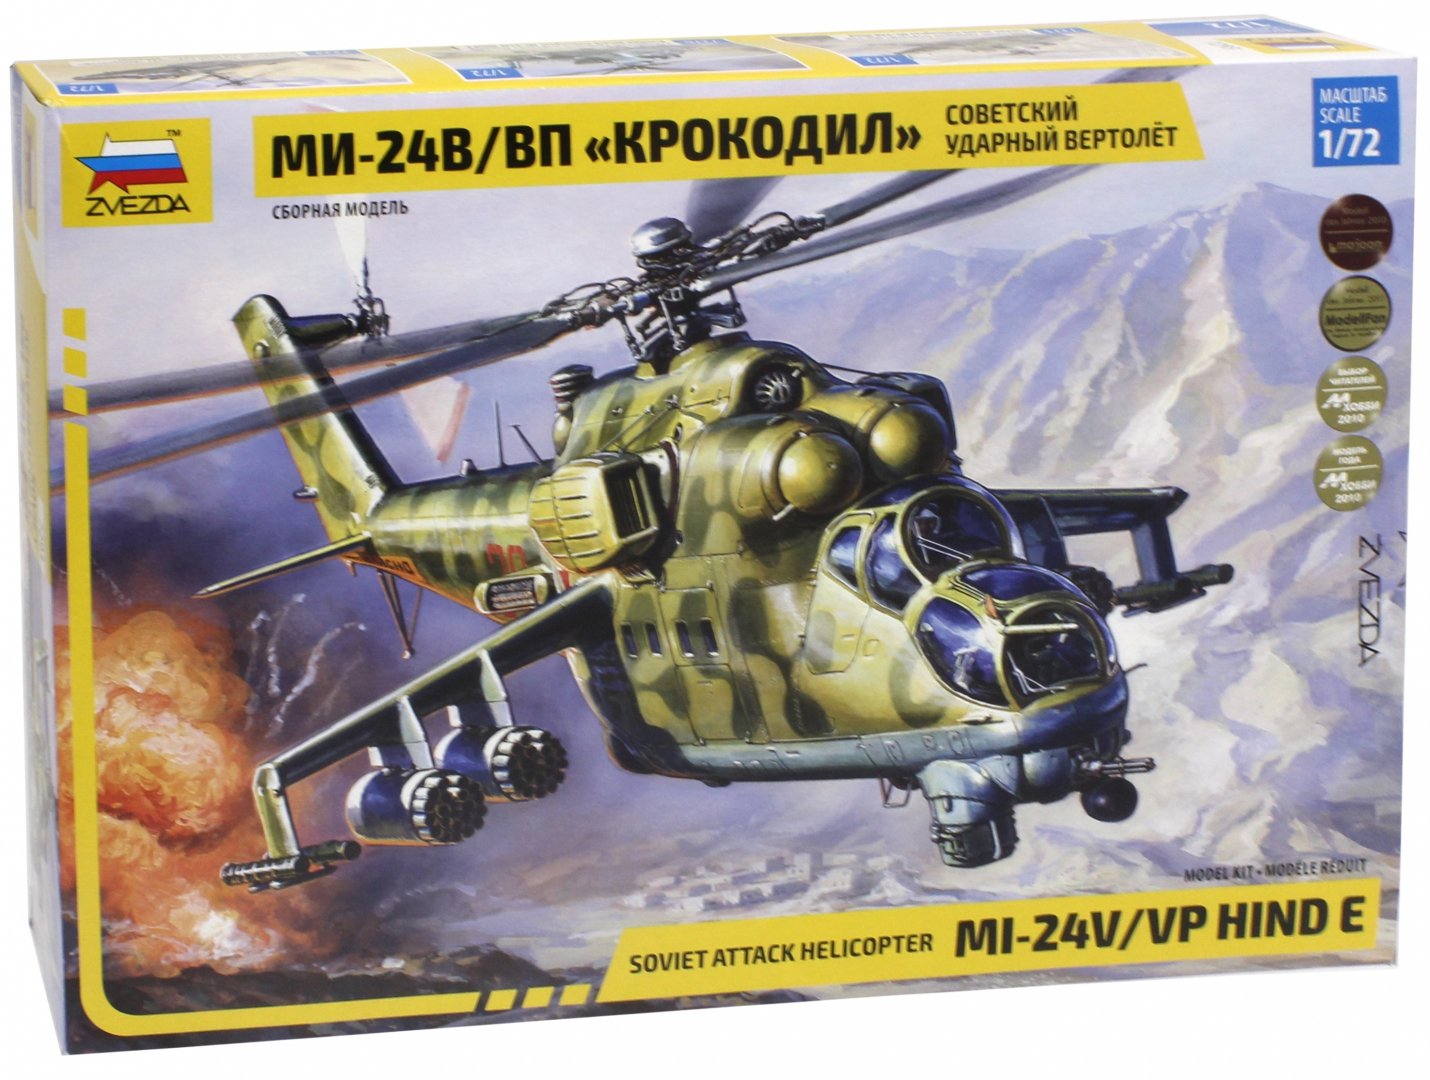 Иллюстрация 1 из 21 для Советский ударный вертолет Ми-24 В/ВП "Крокодил" (7293) | Лабиринт - игрушки. Источник: Лабиринт